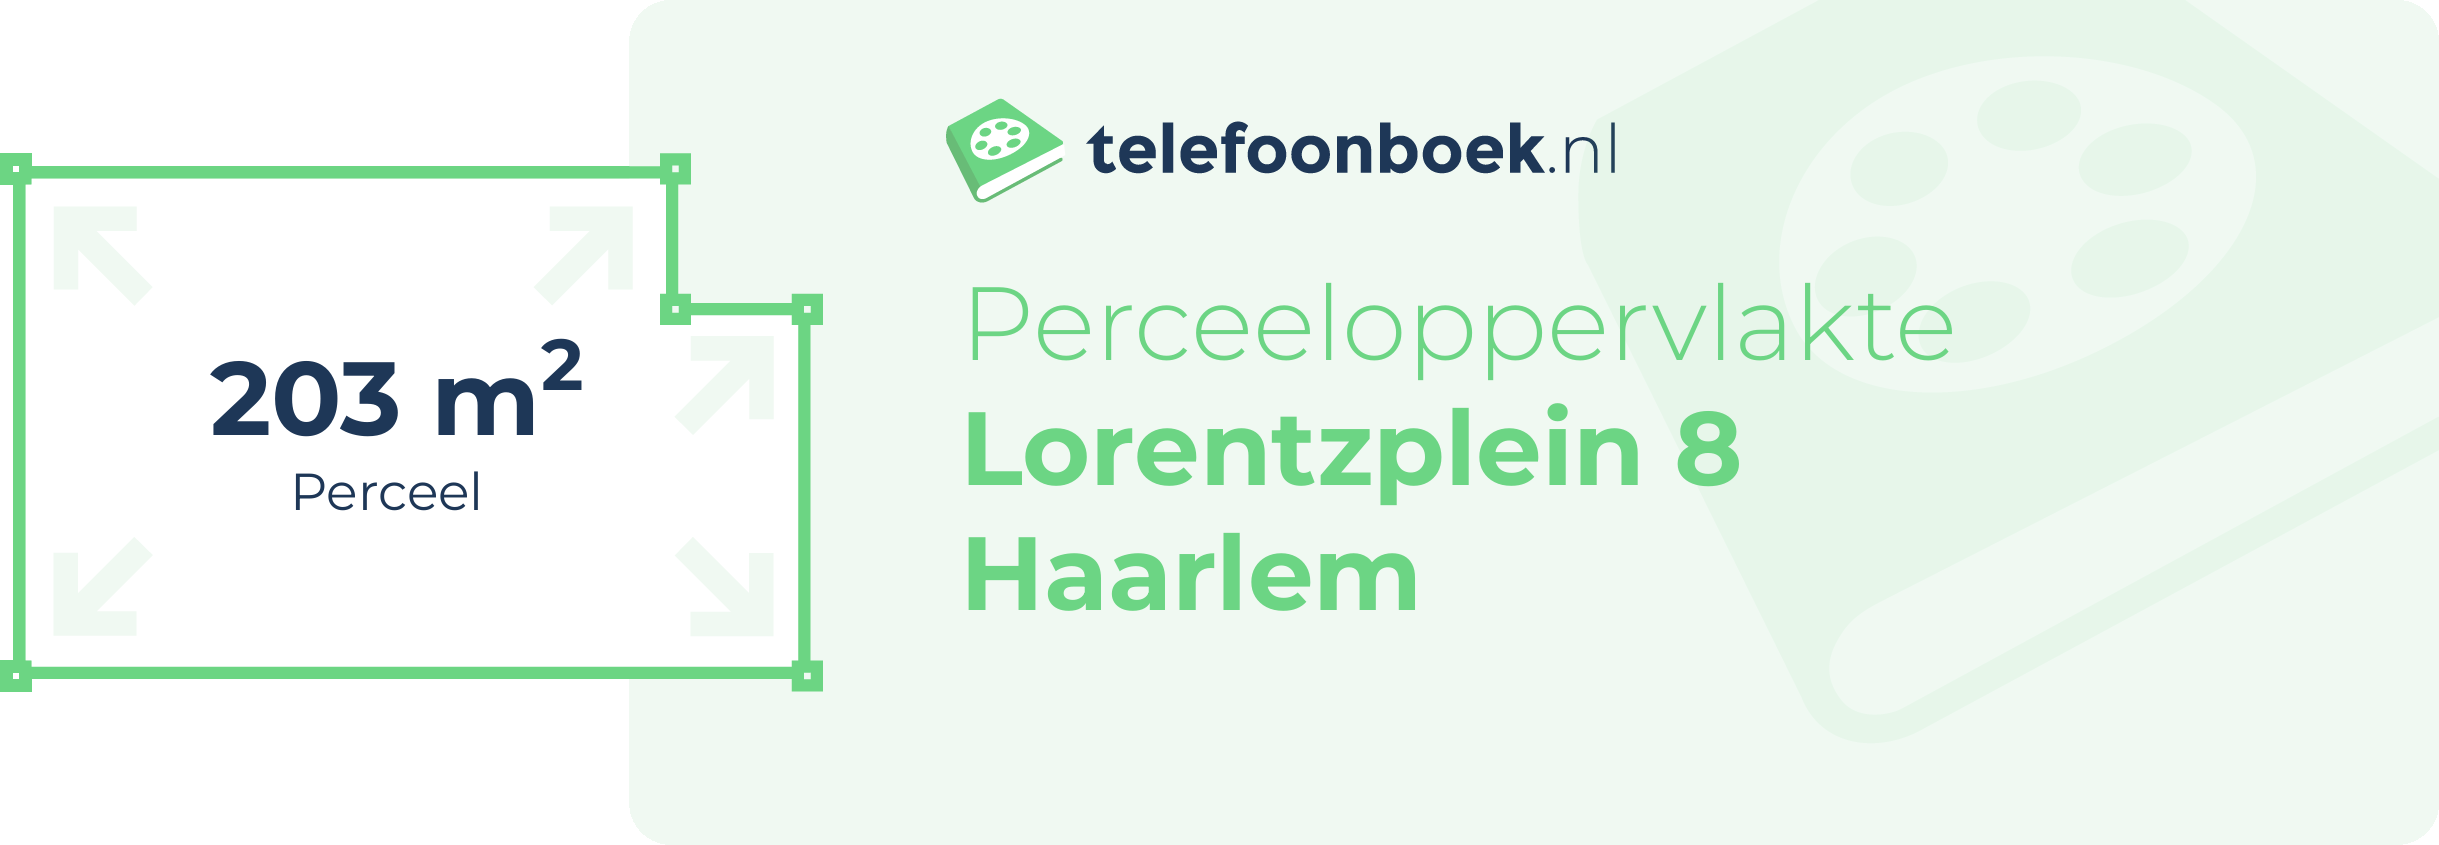 Perceeloppervlakte Lorentzplein 8 Haarlem